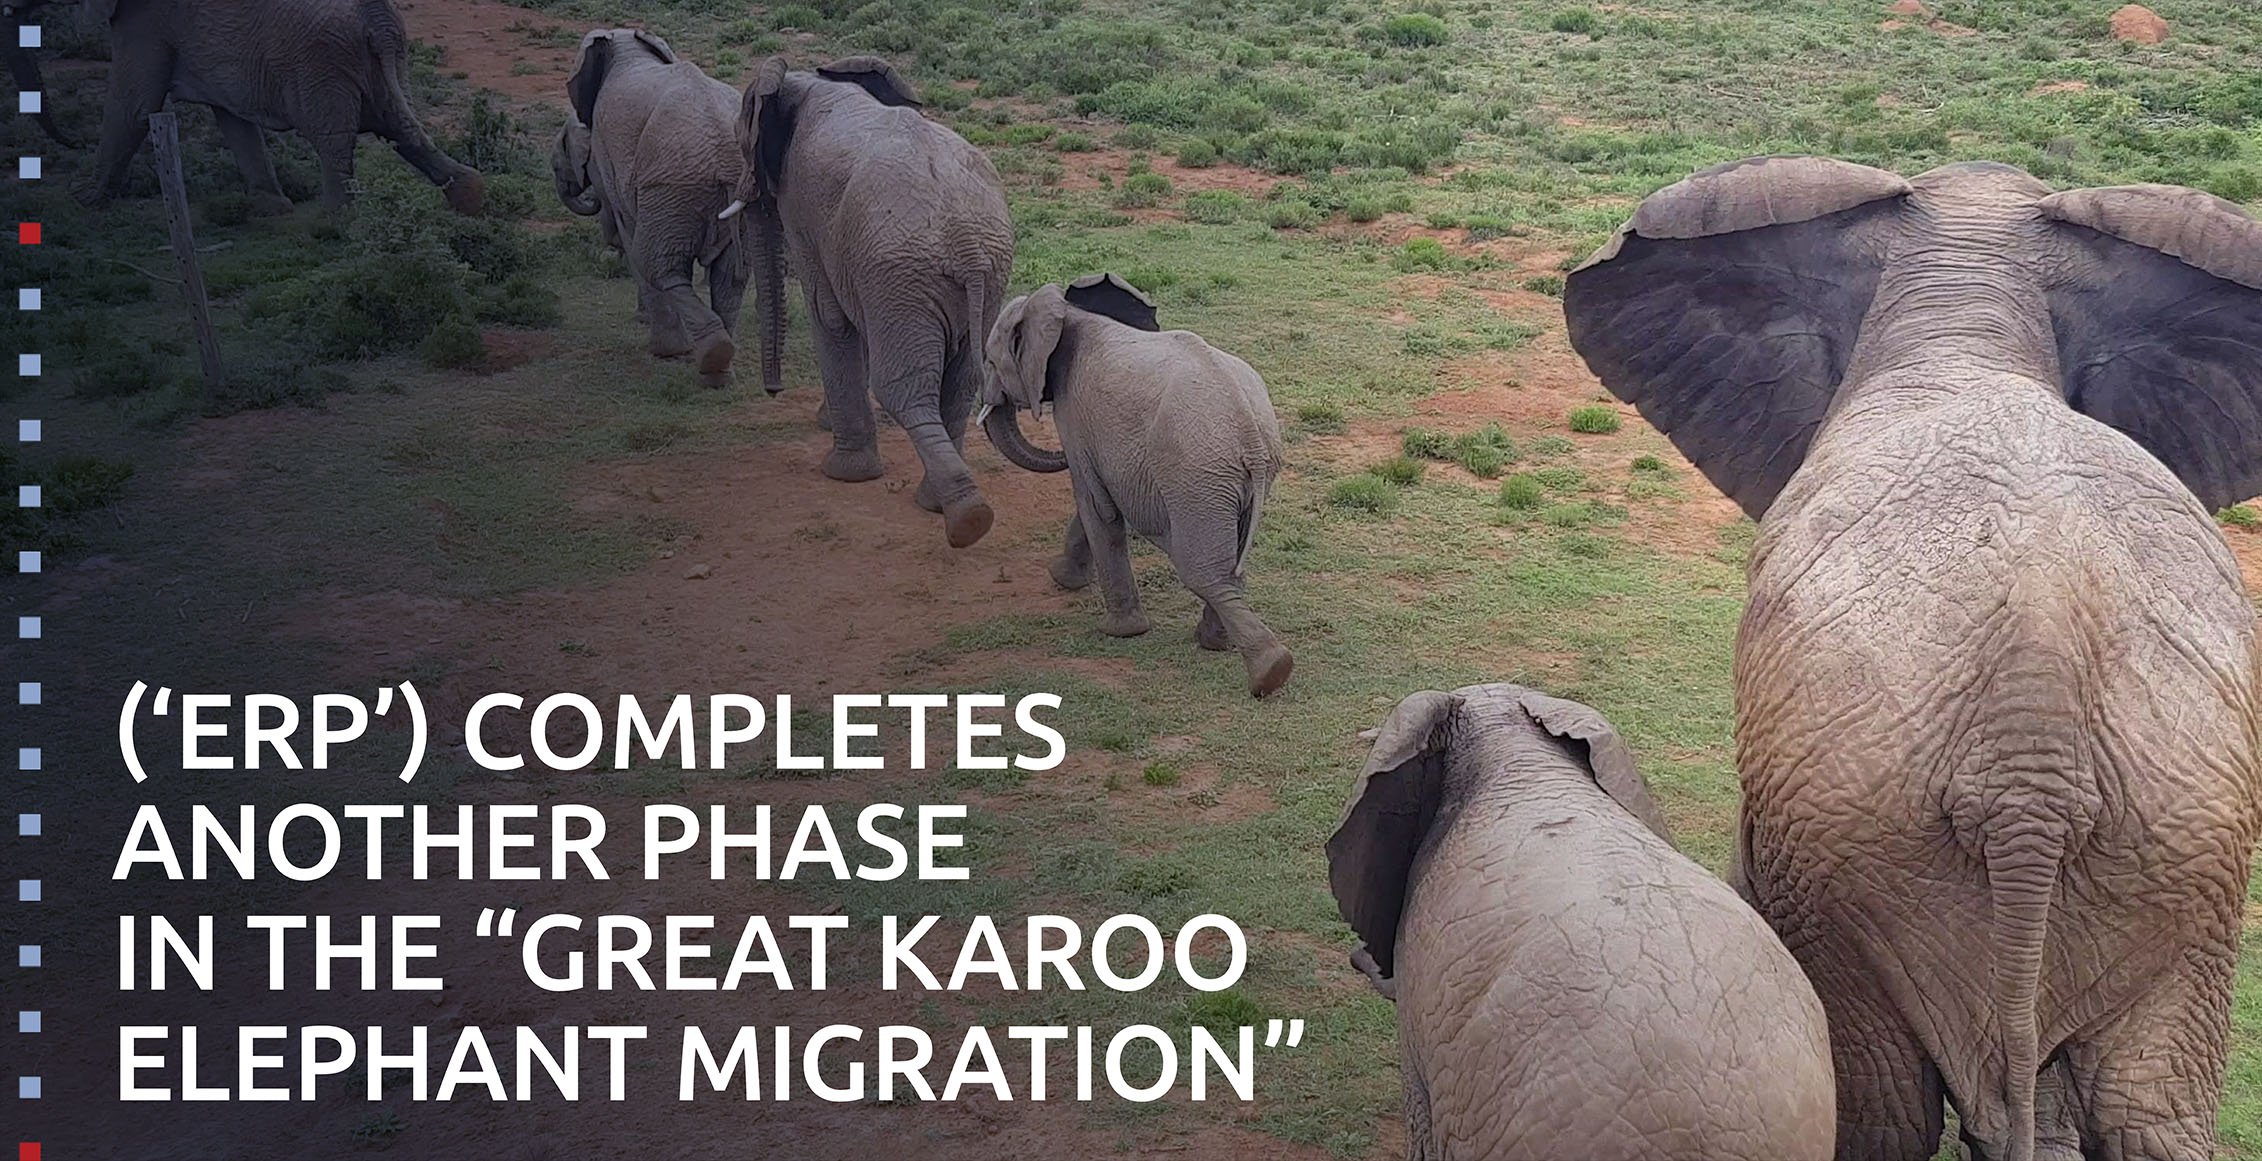 (âERPâ) completes another phase in the - Great Karoo Elephant Migration